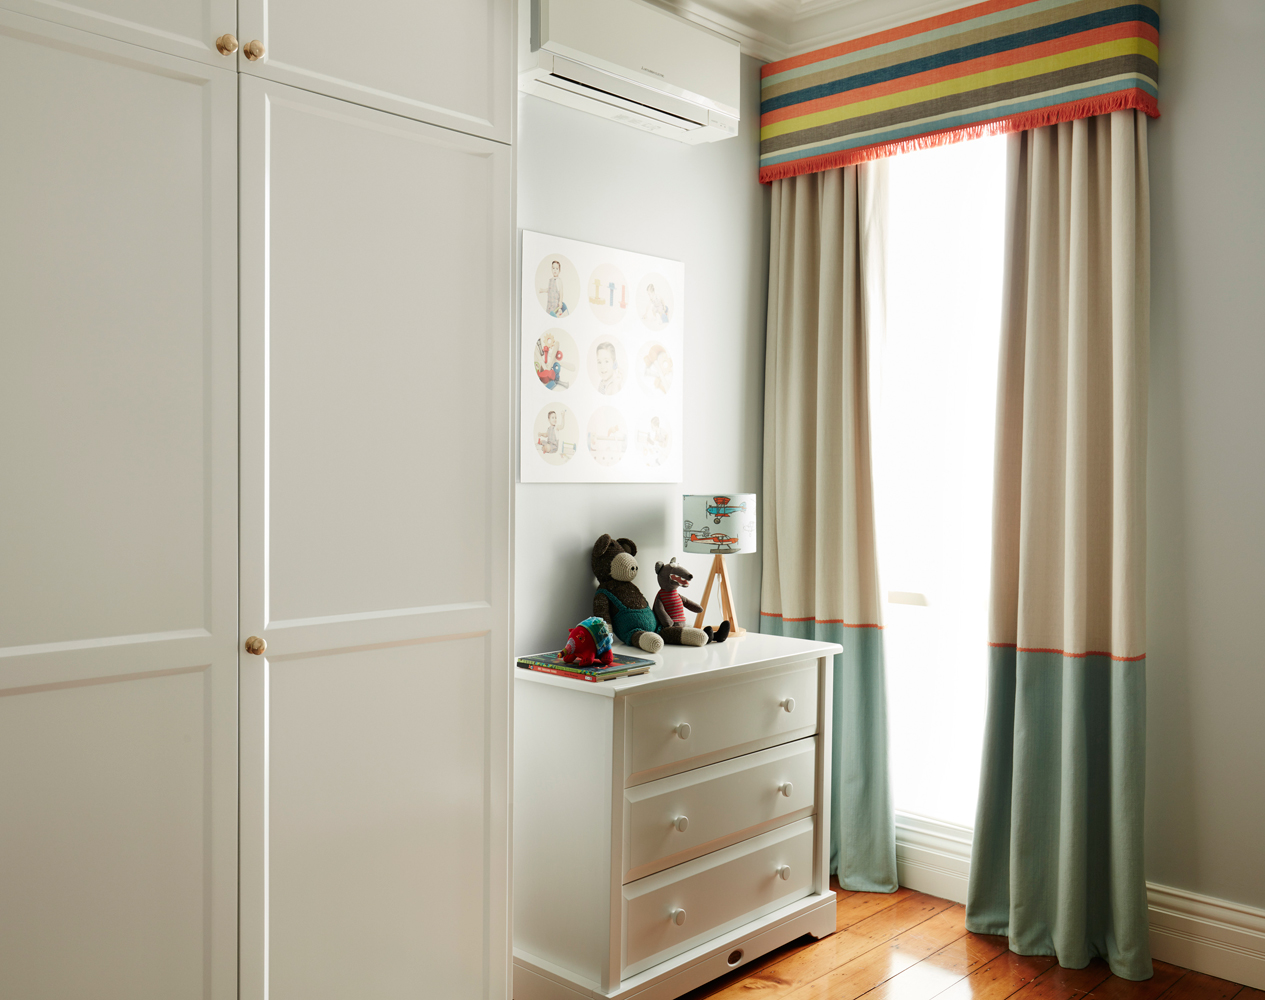 Custom Pelmet and Curtains - No Chintz Interior Decorating